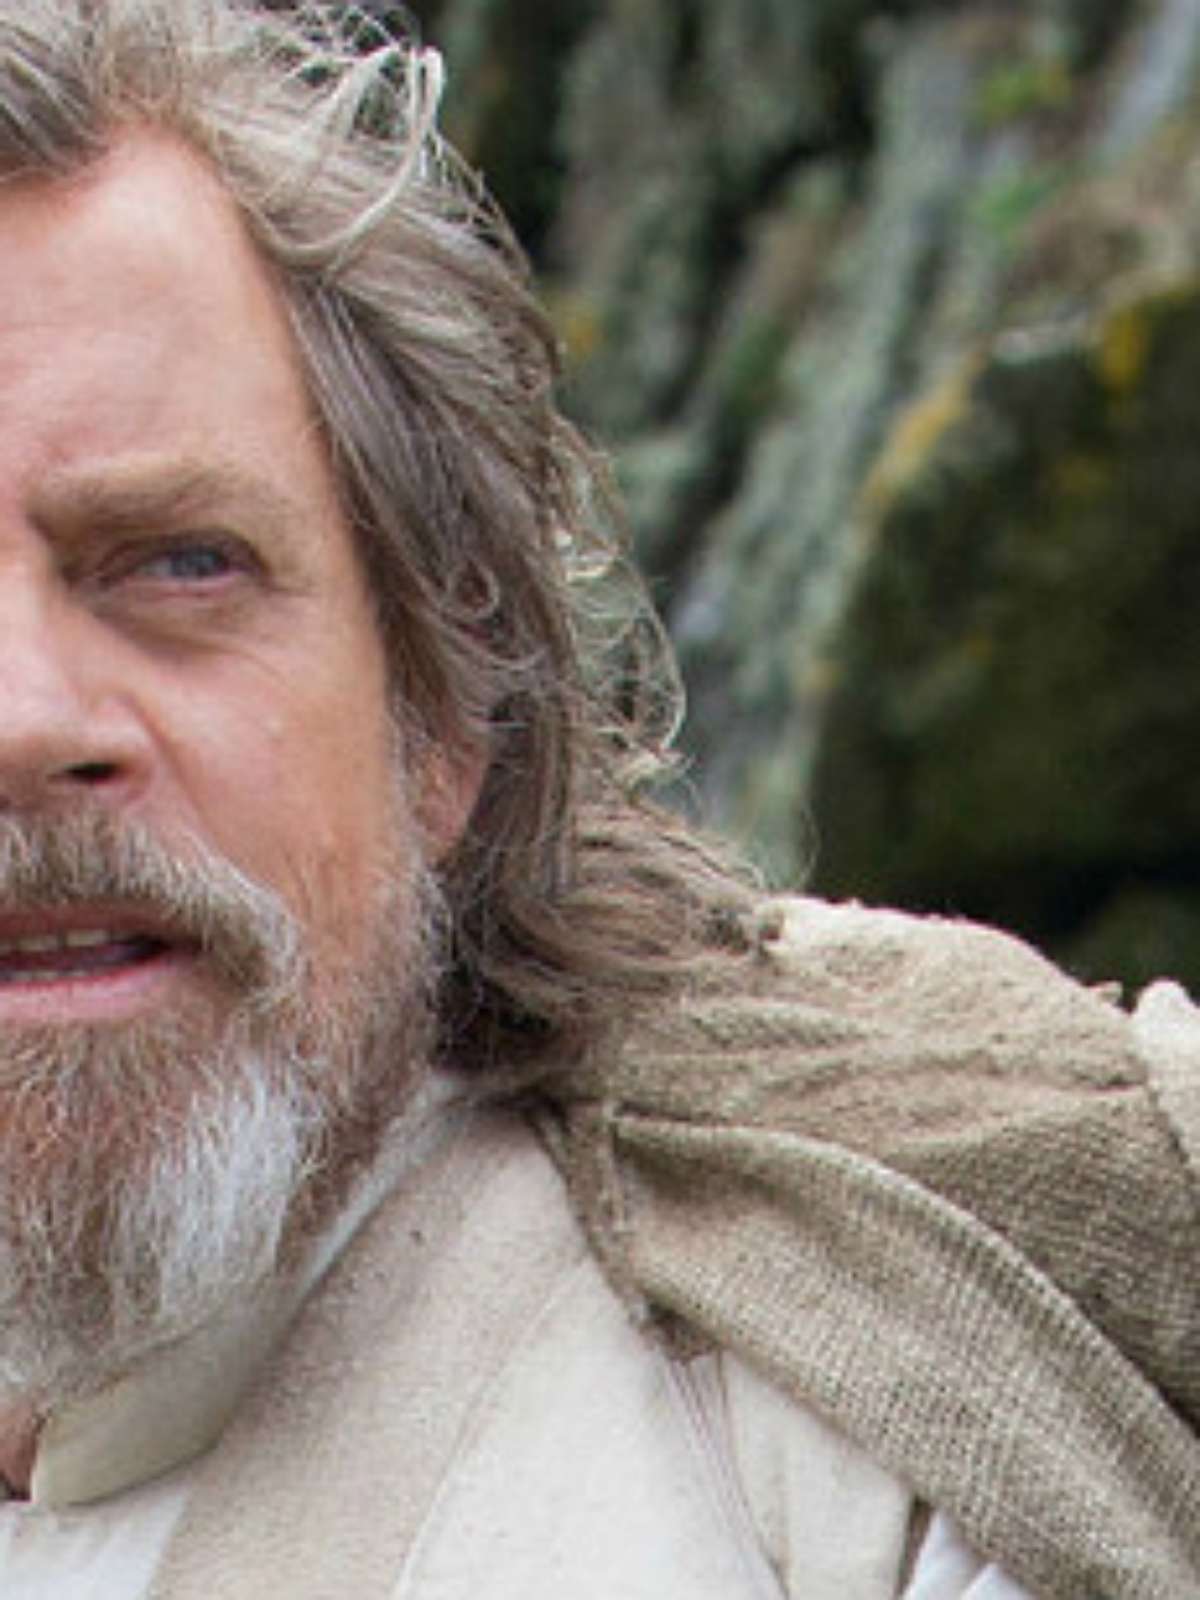 O filme é sobre Luke Skywalker, afirma diretor de Star Wars - Revista  Galileu